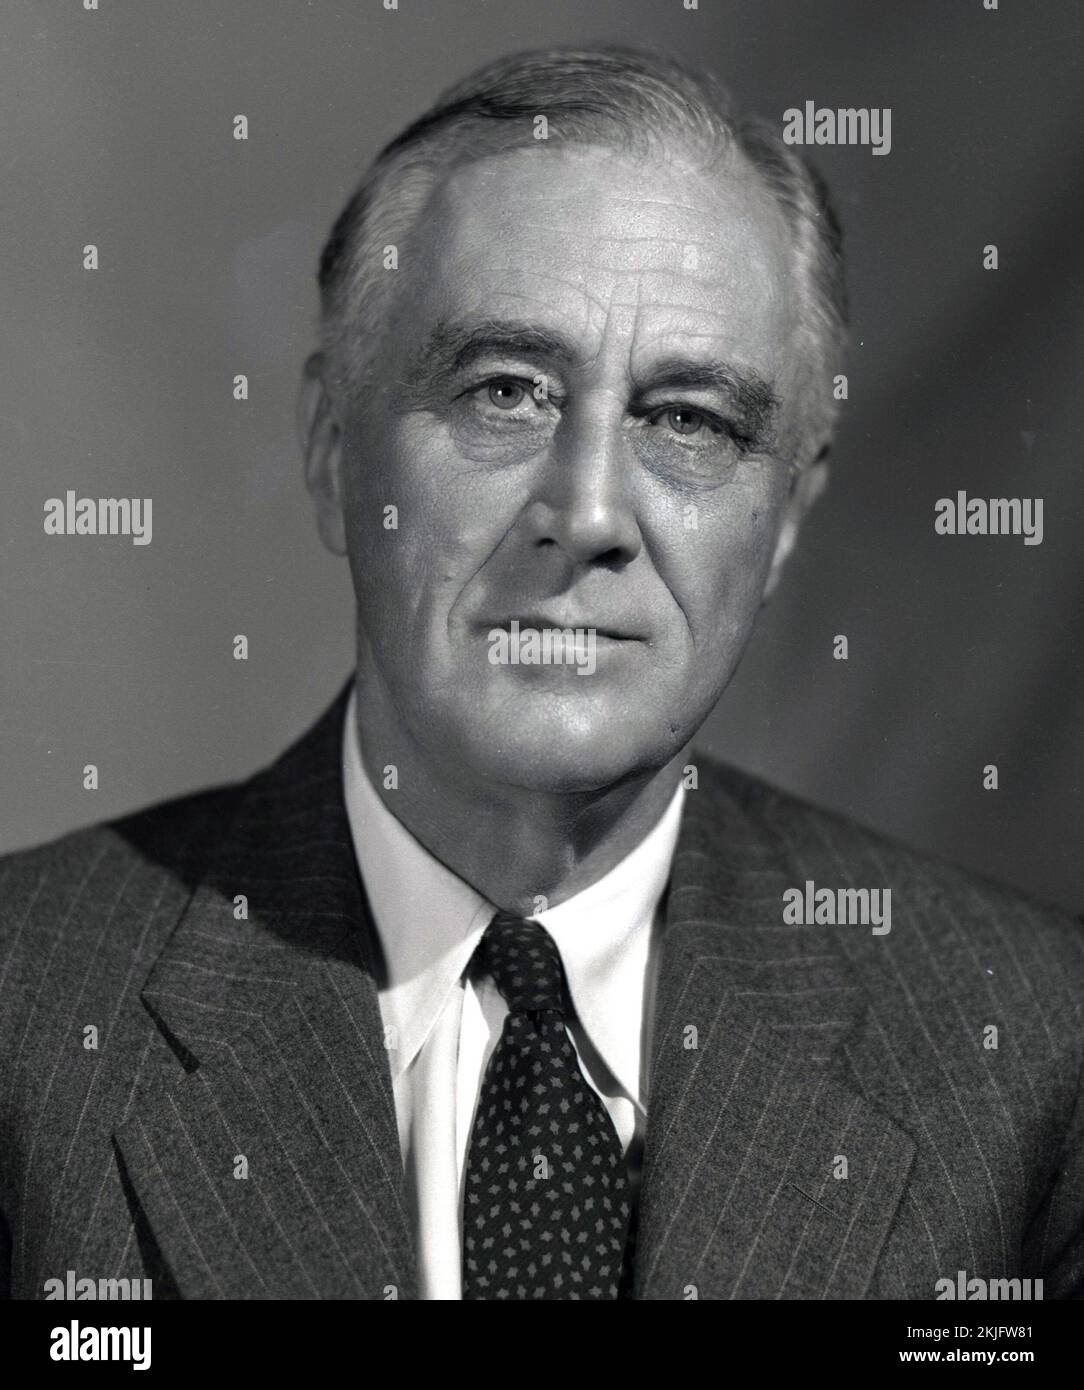 Ein Porträt von US-Präsident Franklin D. Roosevelt aus dem Jahr 1944. Er war 62 Jahre alt. Foto von FDR Presidential Library &amp; Museum - 09-109(12), CC BIS 2,0, https://commons.wikimedia.org/w/index.php?curid=40021191 Stockfoto